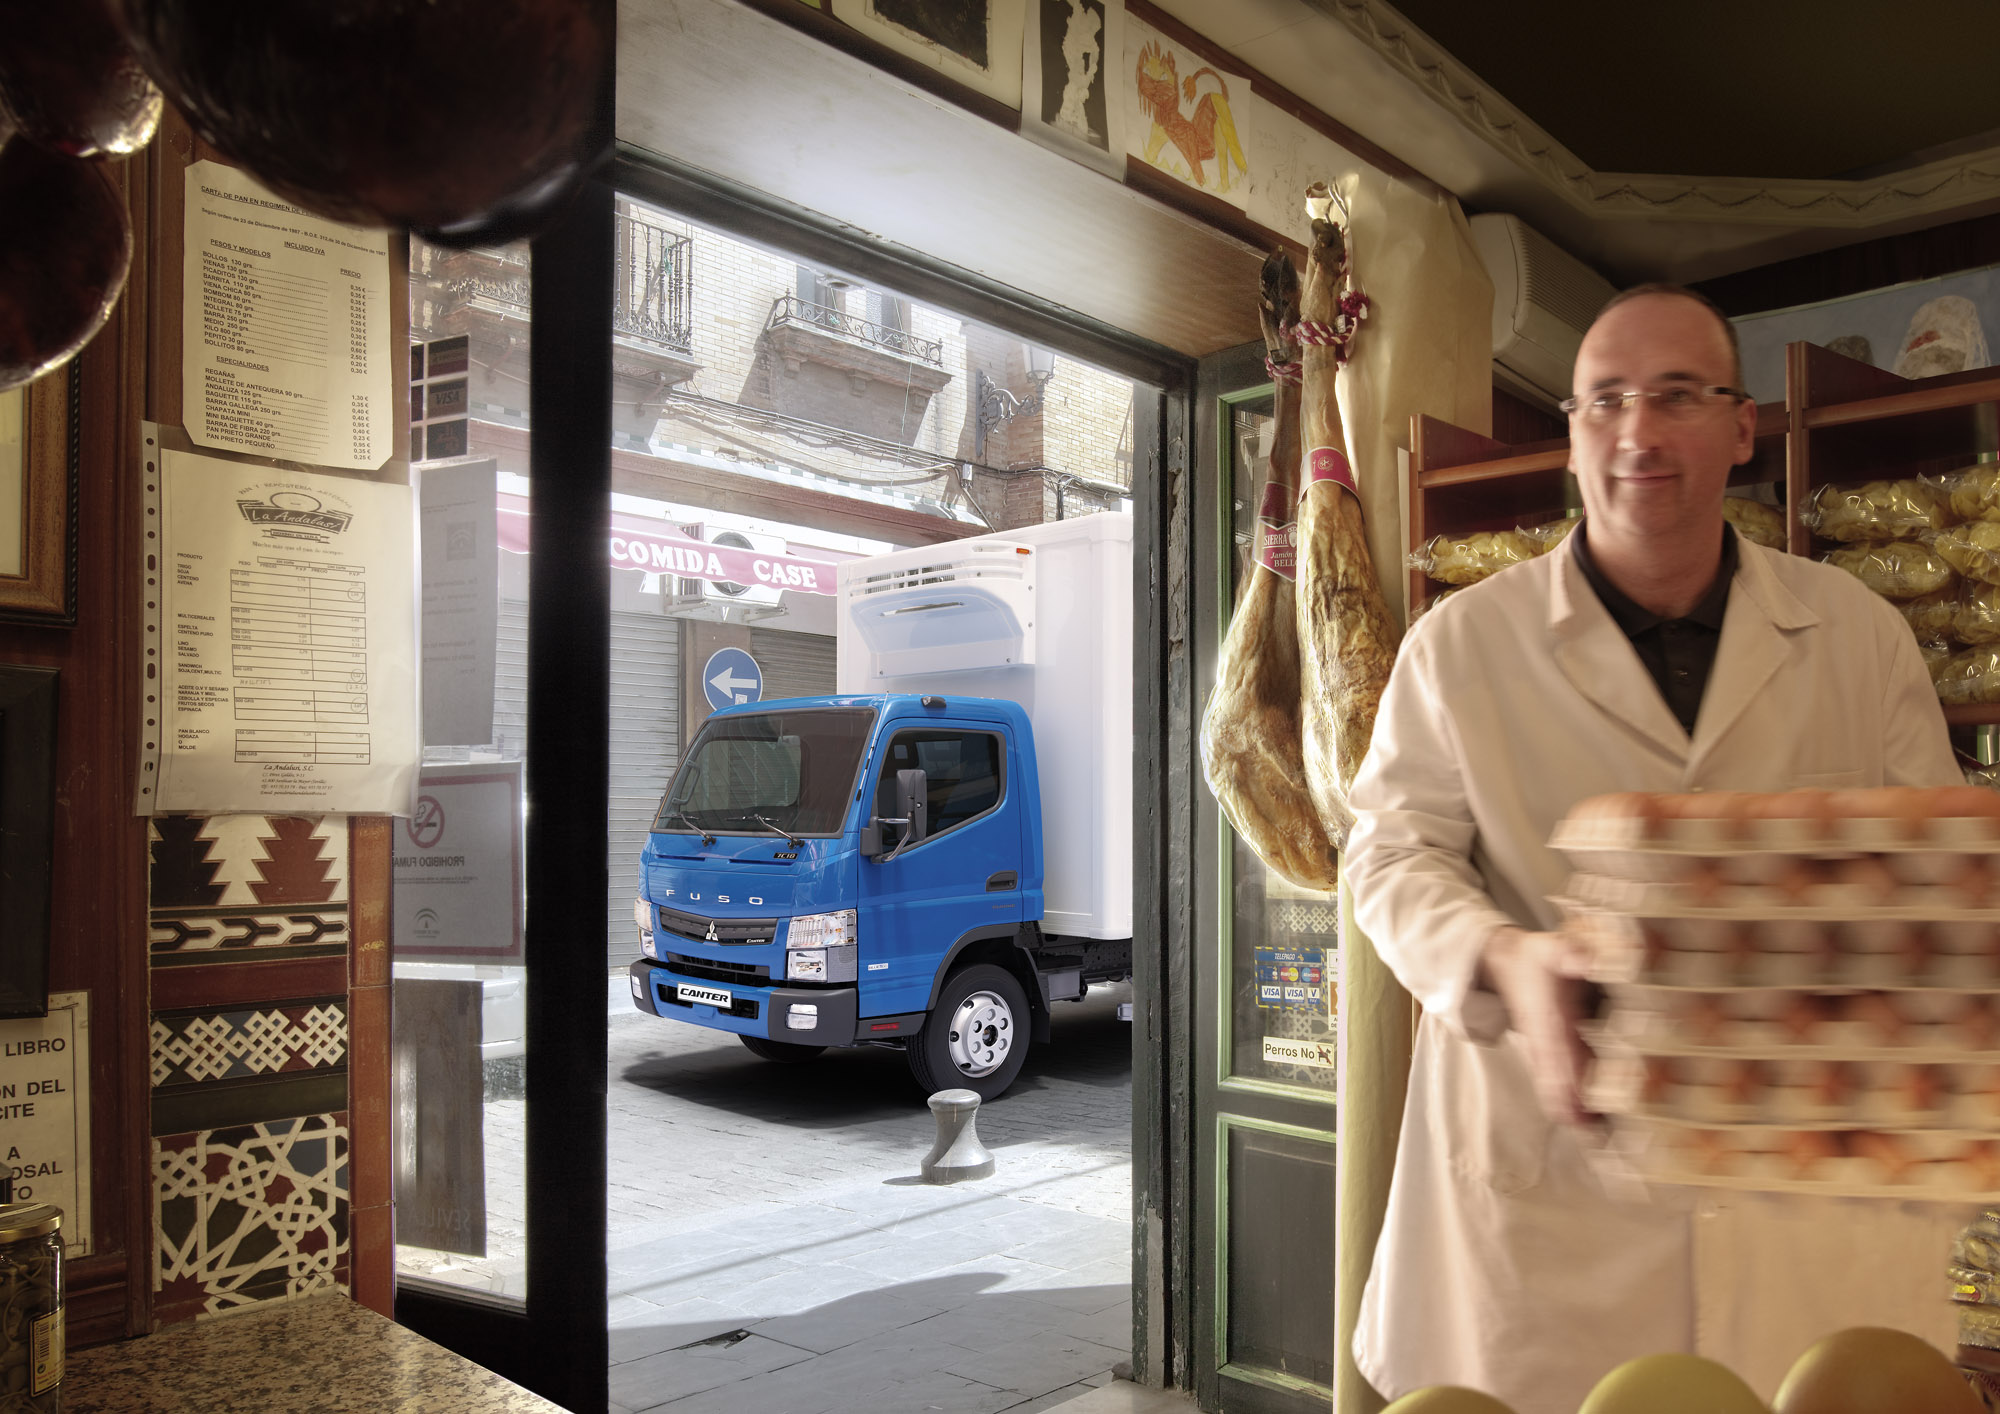 Trabajador entregando cajas de huevos a un negocio local, dejando estacionado su camion canter al frende del local